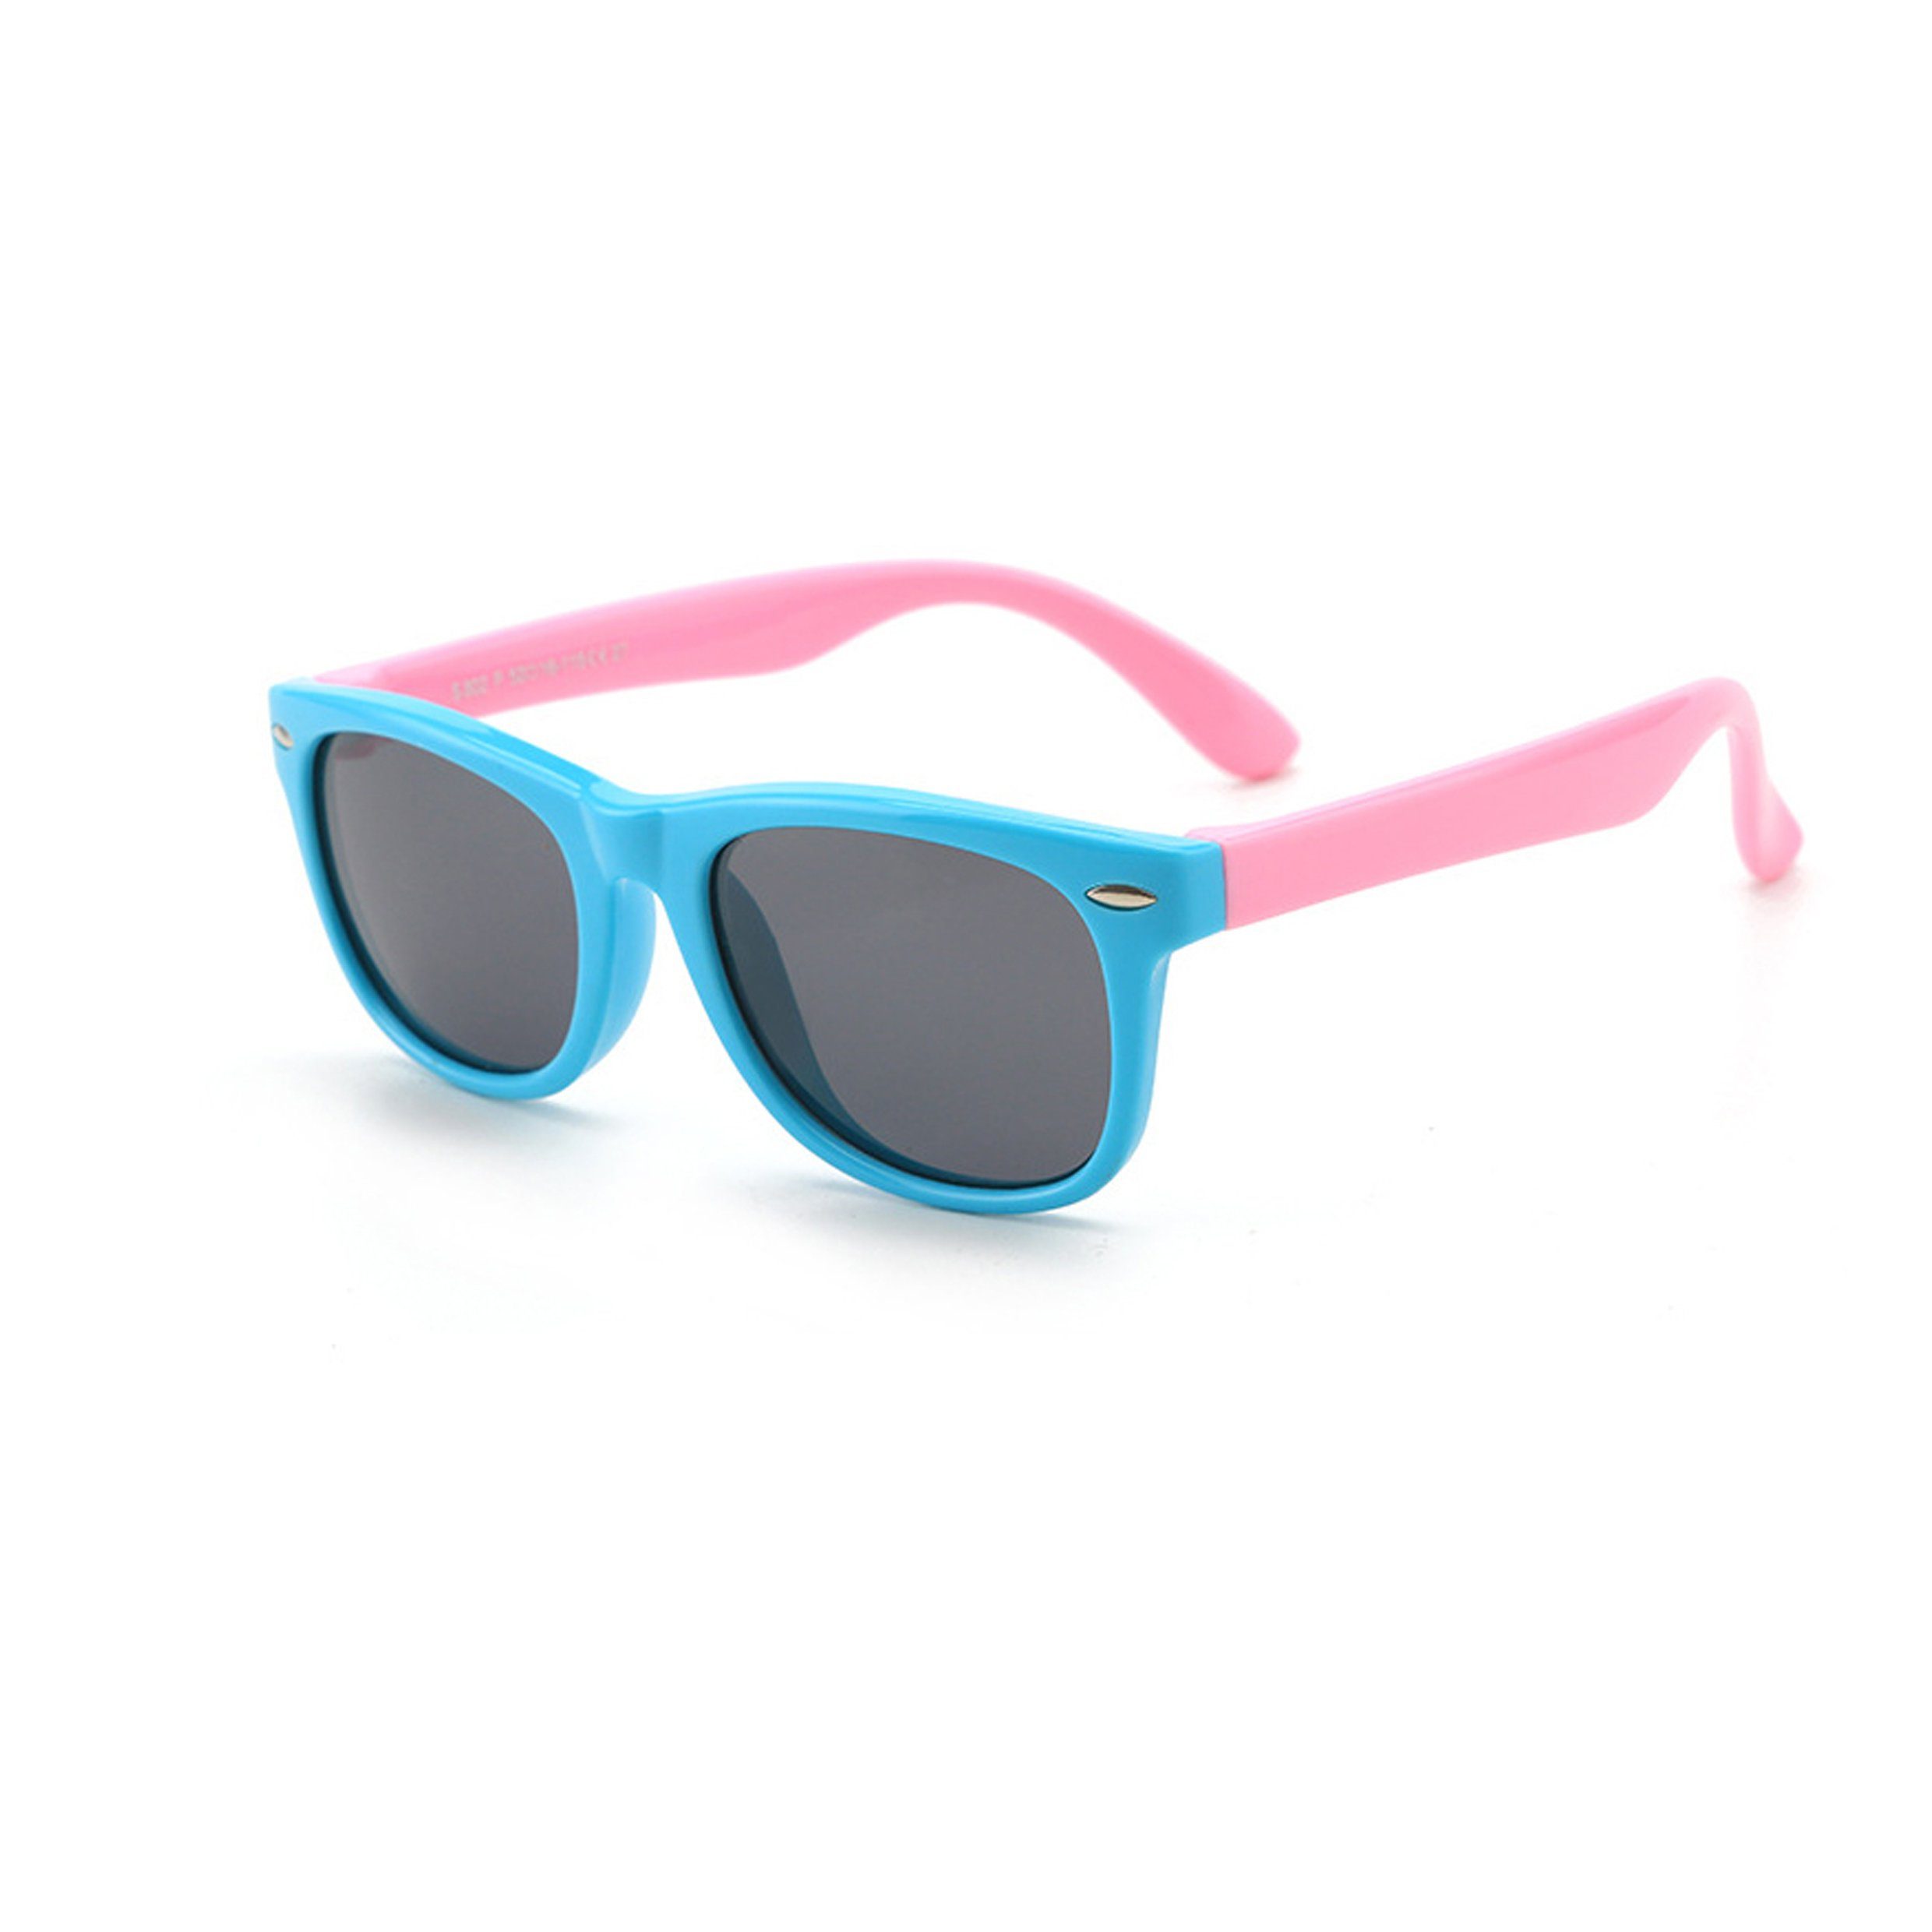 Olotos Sonnenbrille Sonnenbrille für UV400 Brille Hellblau-Rosa Gummi Kinder 100% Schutz Jungen Mädchen